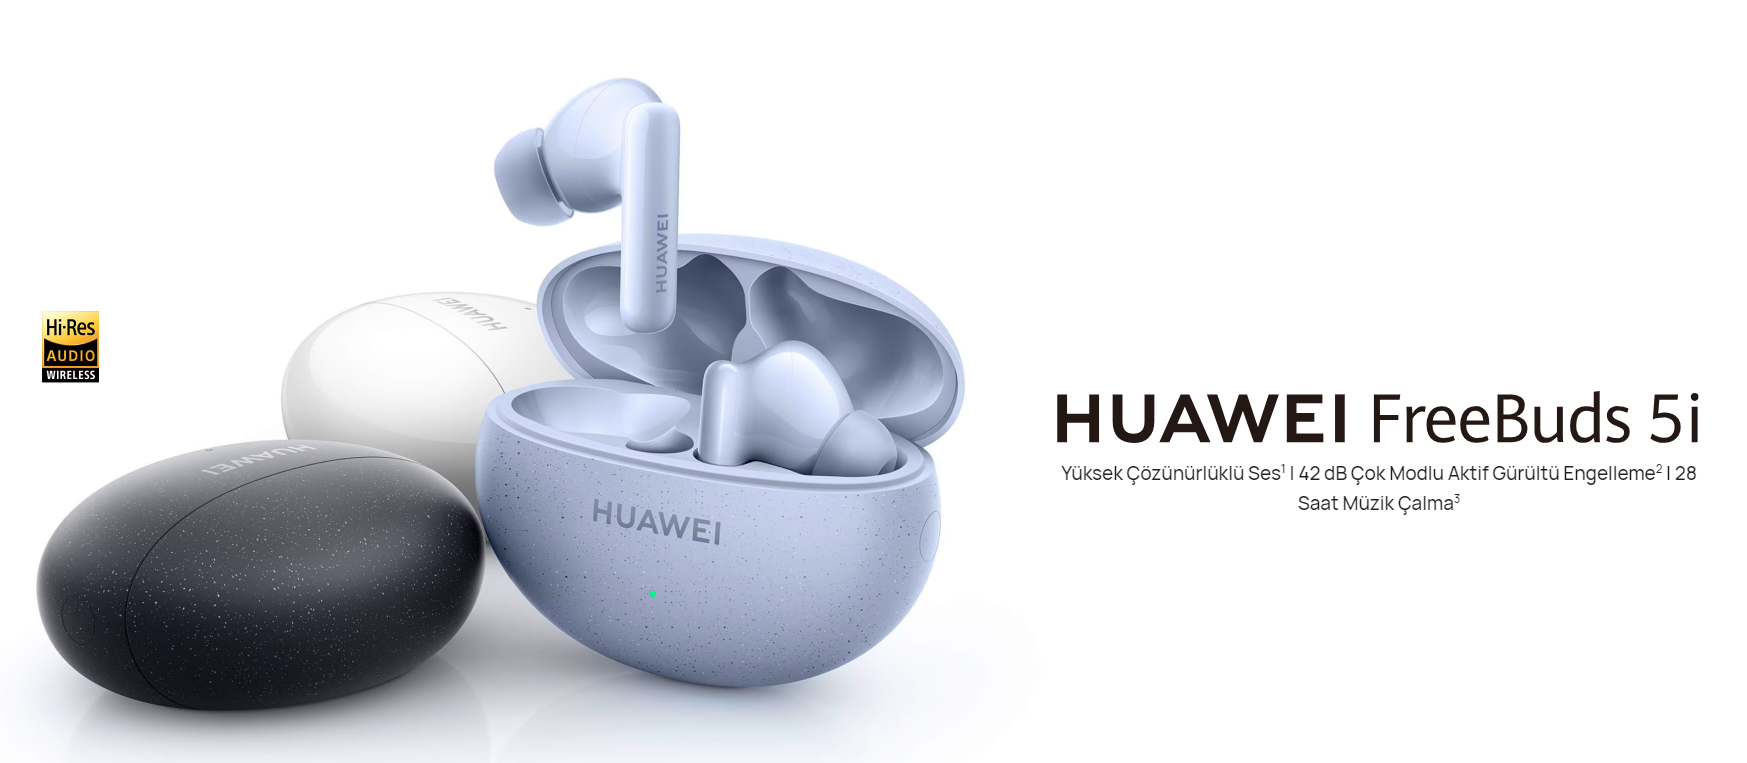 HUAWEI FreeBuds 5i, etkileyici ses deneyimi ve hafif tasarımıyla sizlere mükemmel bir deneyim sunuyor. Aktif Gürültü Engelleme ile çevresel sesleri bloke ederken, 28 saatlik pil ömrü ile kesintisiz müzik keyfi sunar. Kompakt yapı, kişisel konfor için tasarlanmış eartips'lerle birleşir. Hi-Res Audio Wireless sertifikalı sesi ve 10 mm dinamik sürücü birimleriyle öne çıkan FreeBuds 5i, özgürlüğü ve performansı bir araya getiriyor.